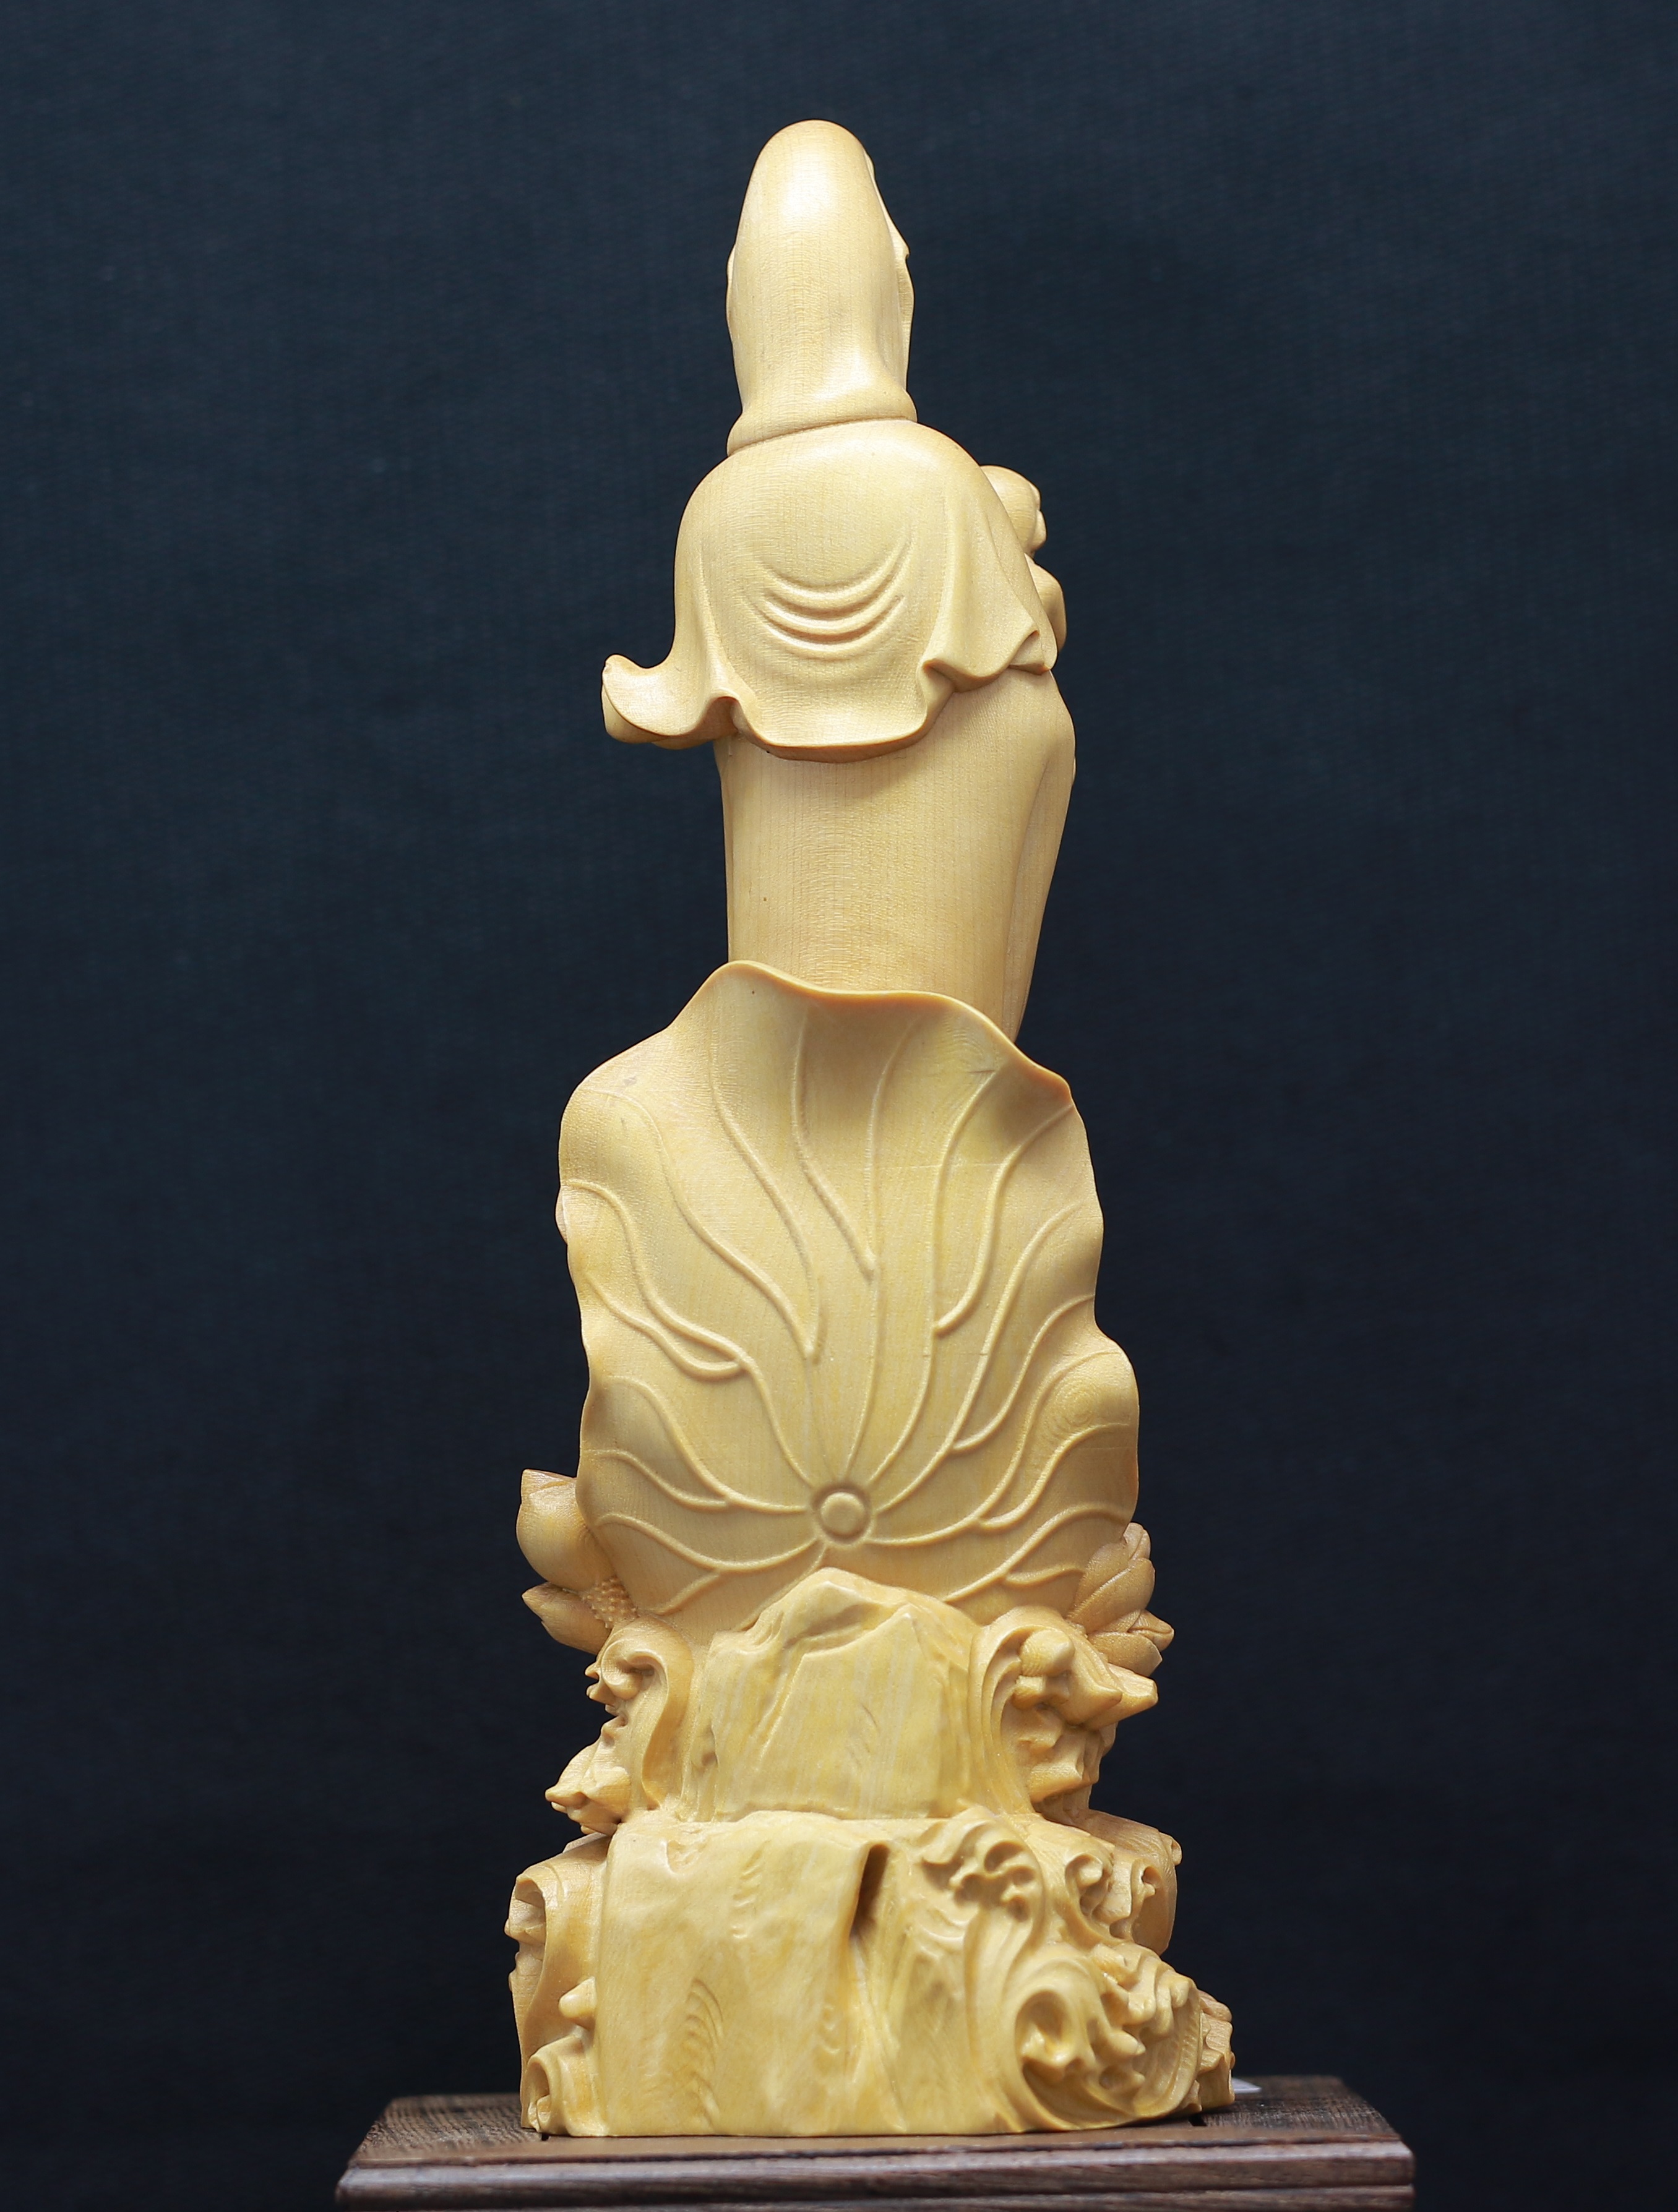 Tượng Quan Âm Tống Tử đứng ( Tống Tử Quan Âm- Quan Âm Bồng Em Bé đứng) - làm bằng Gỗ Hoàng Dương, cao khoảng 21.5cm